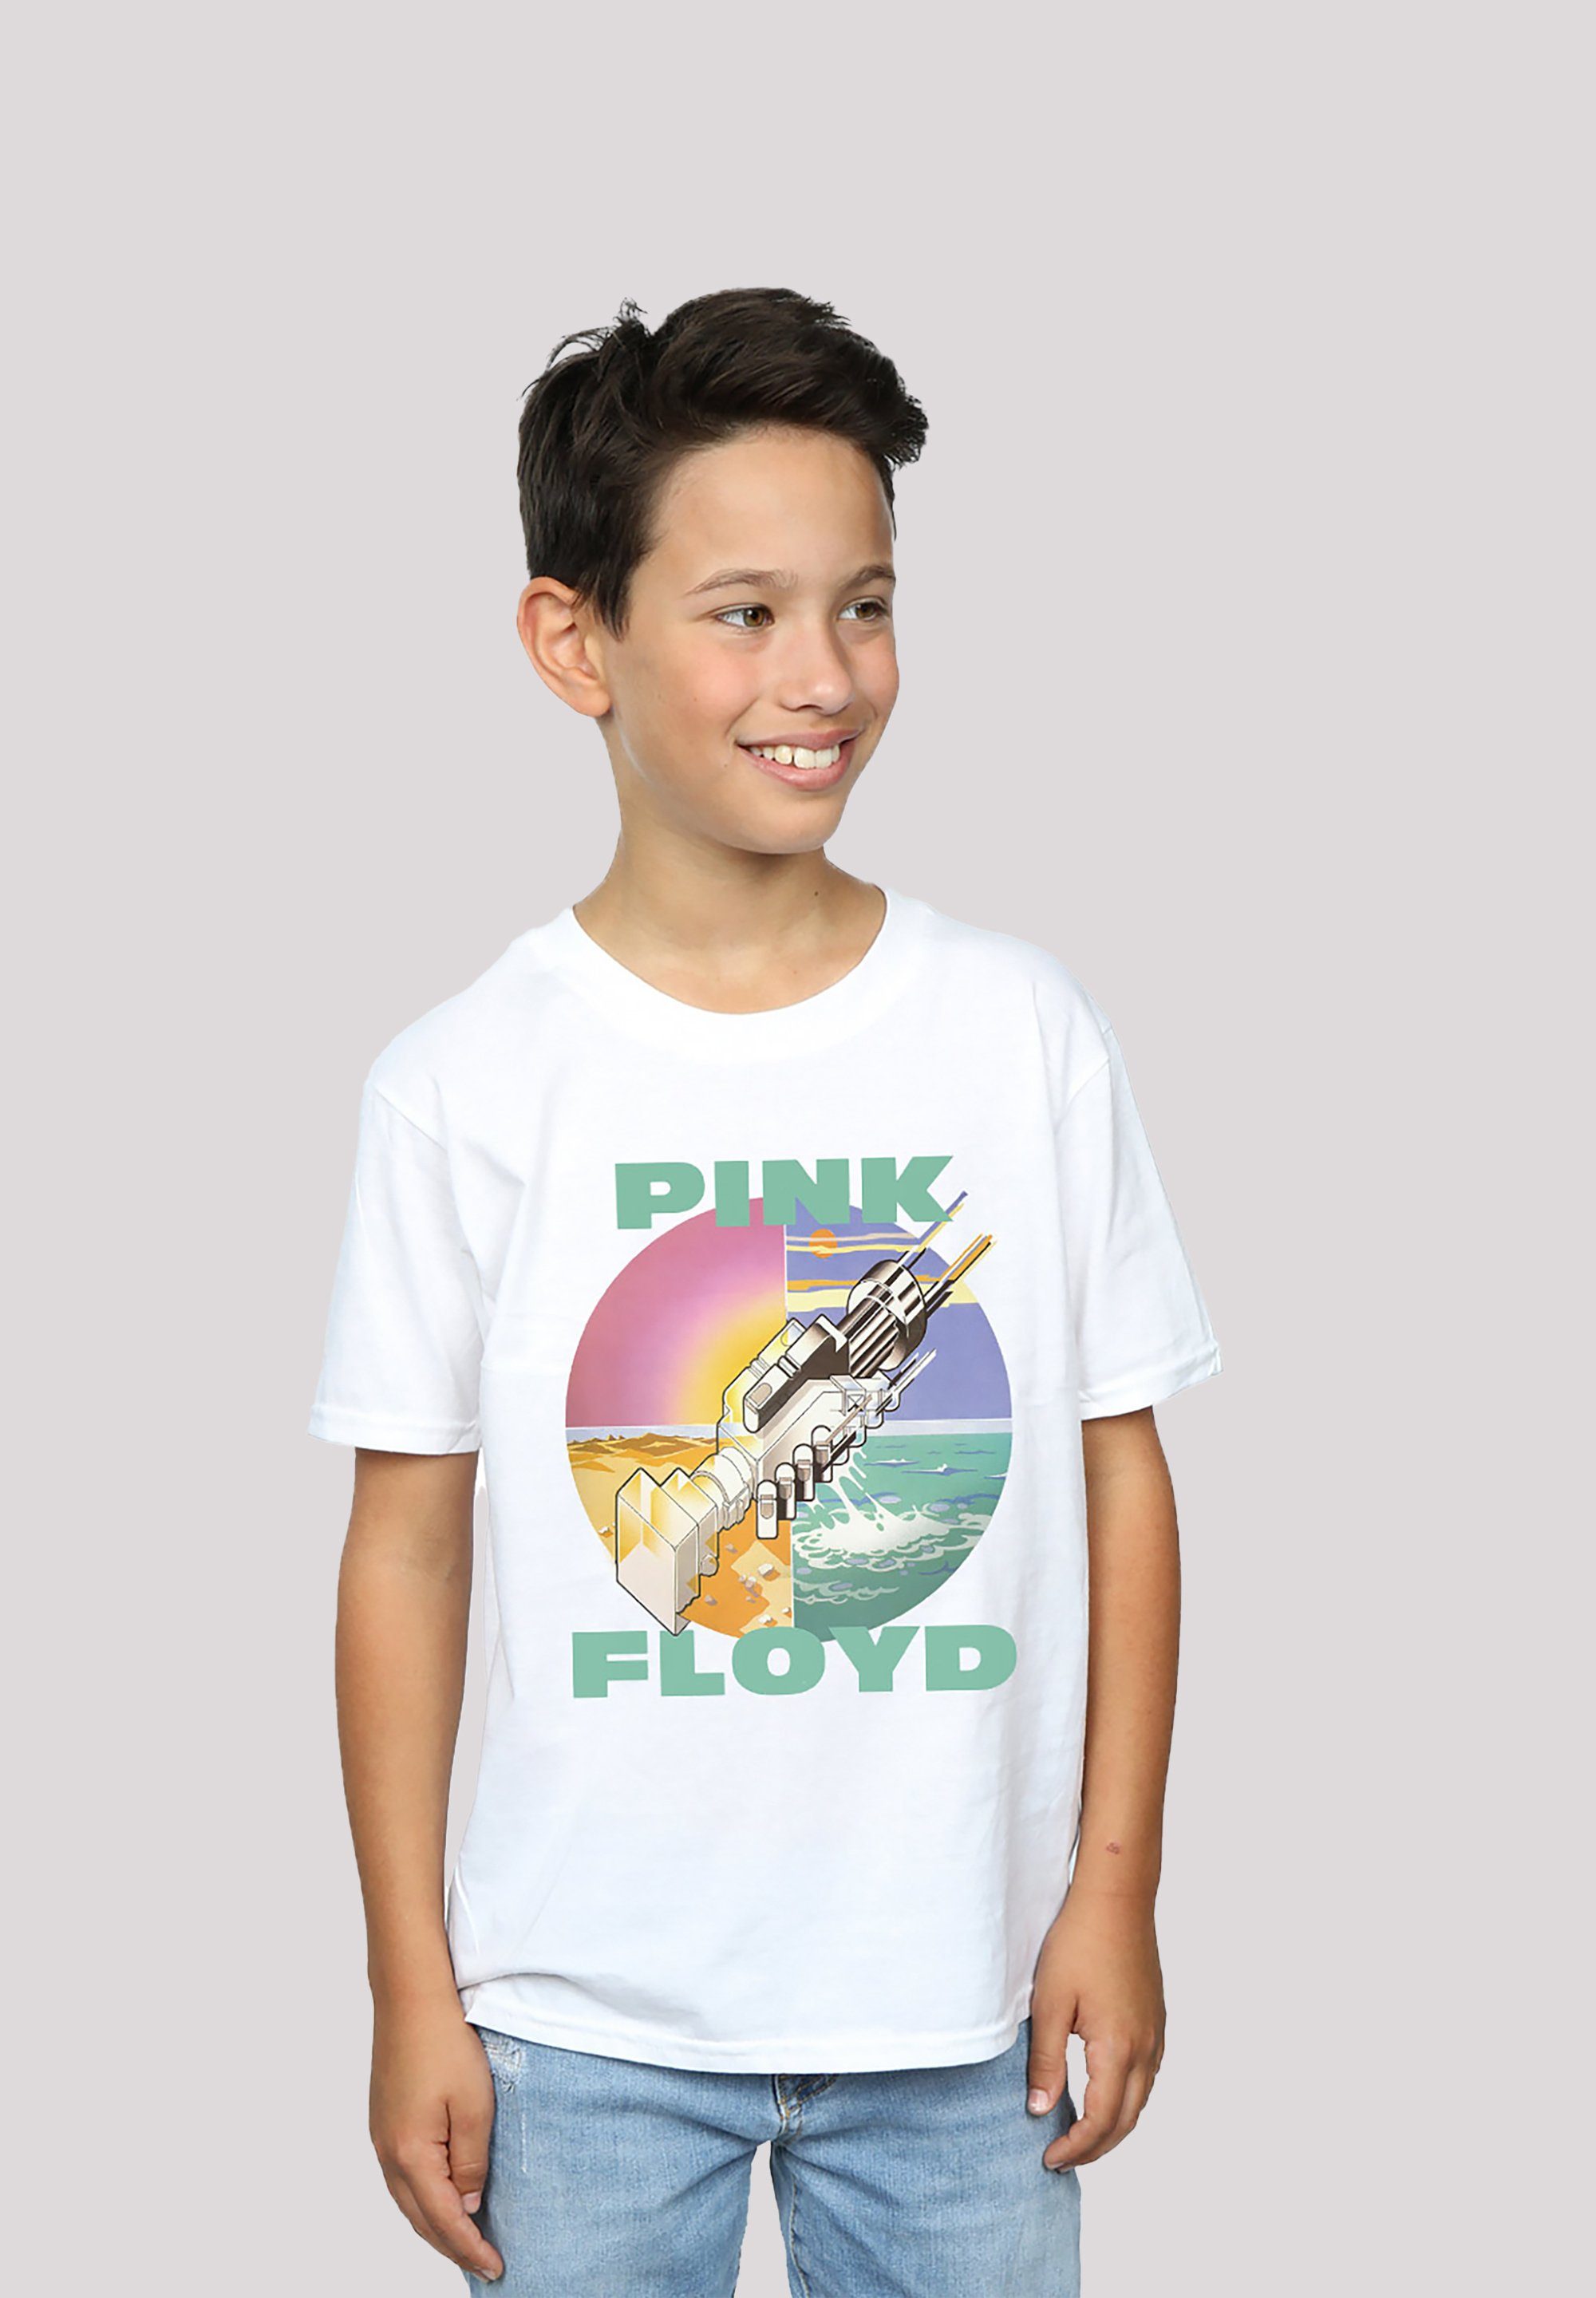 F4NT4STIC T-Shirt Pink Floyd Tragekomfort Baumwollstoff You Sehr Here Wish weicher mit Were Print, hohem